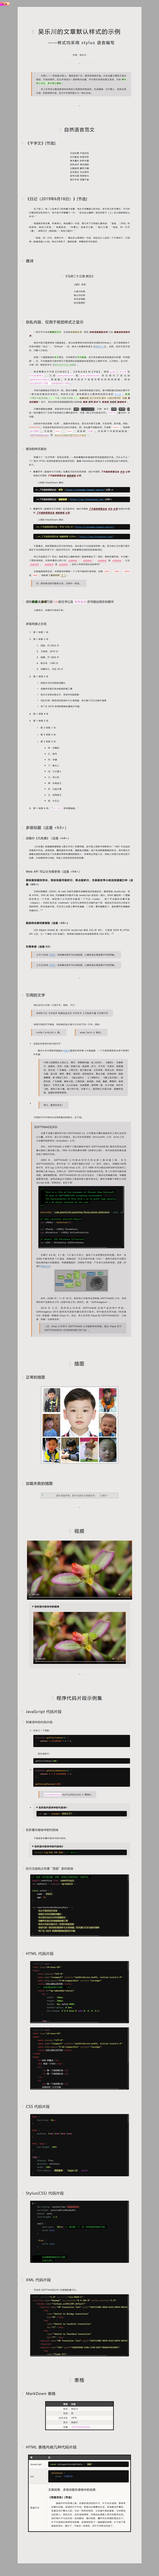 示例：简体中文范文配默认浅色主题，1-在宽大尺寸浏览器中的效果（目录已收叠）.png